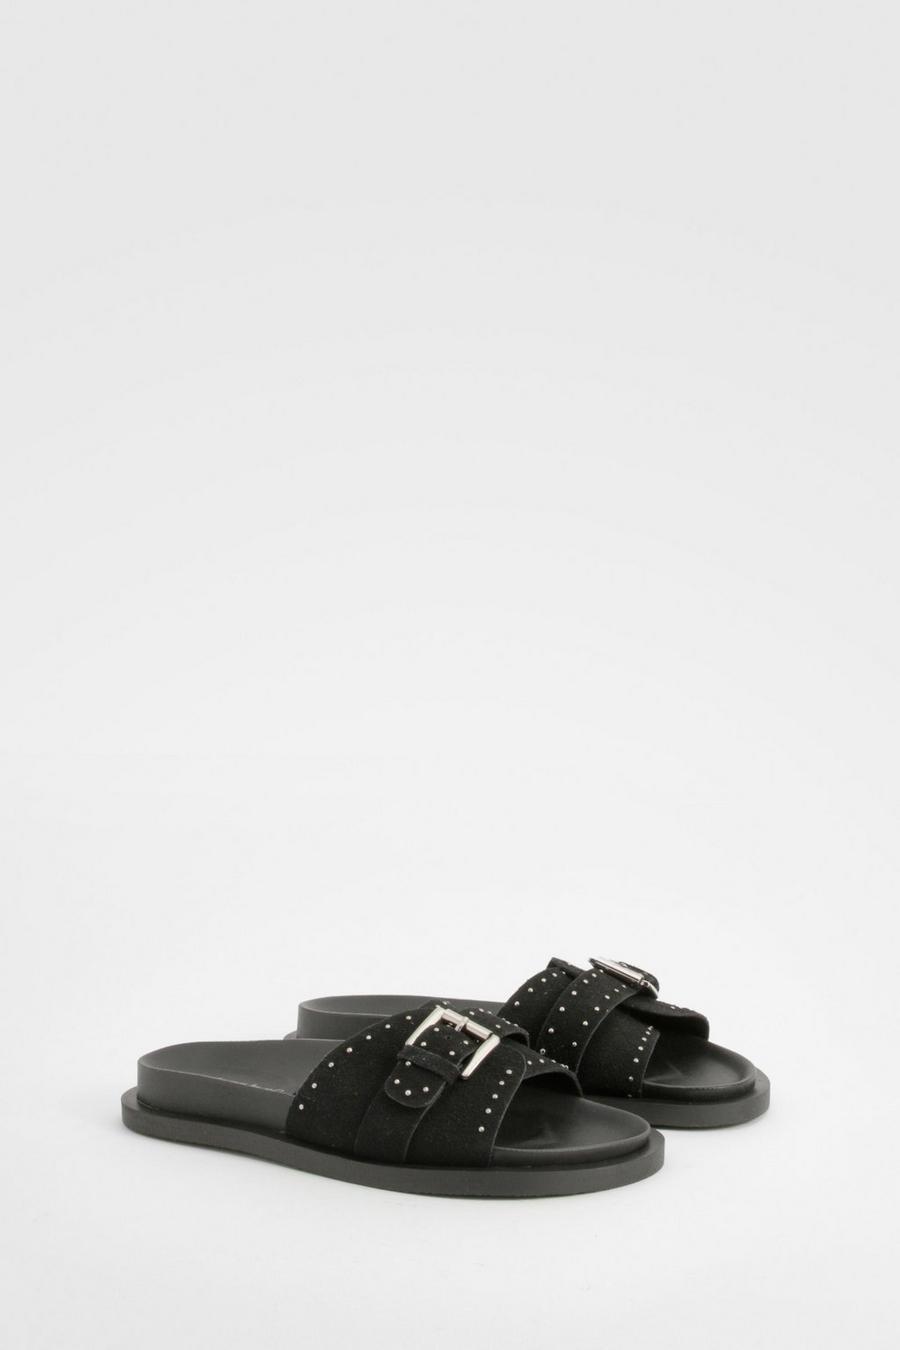 Black Studded Leather Sliders